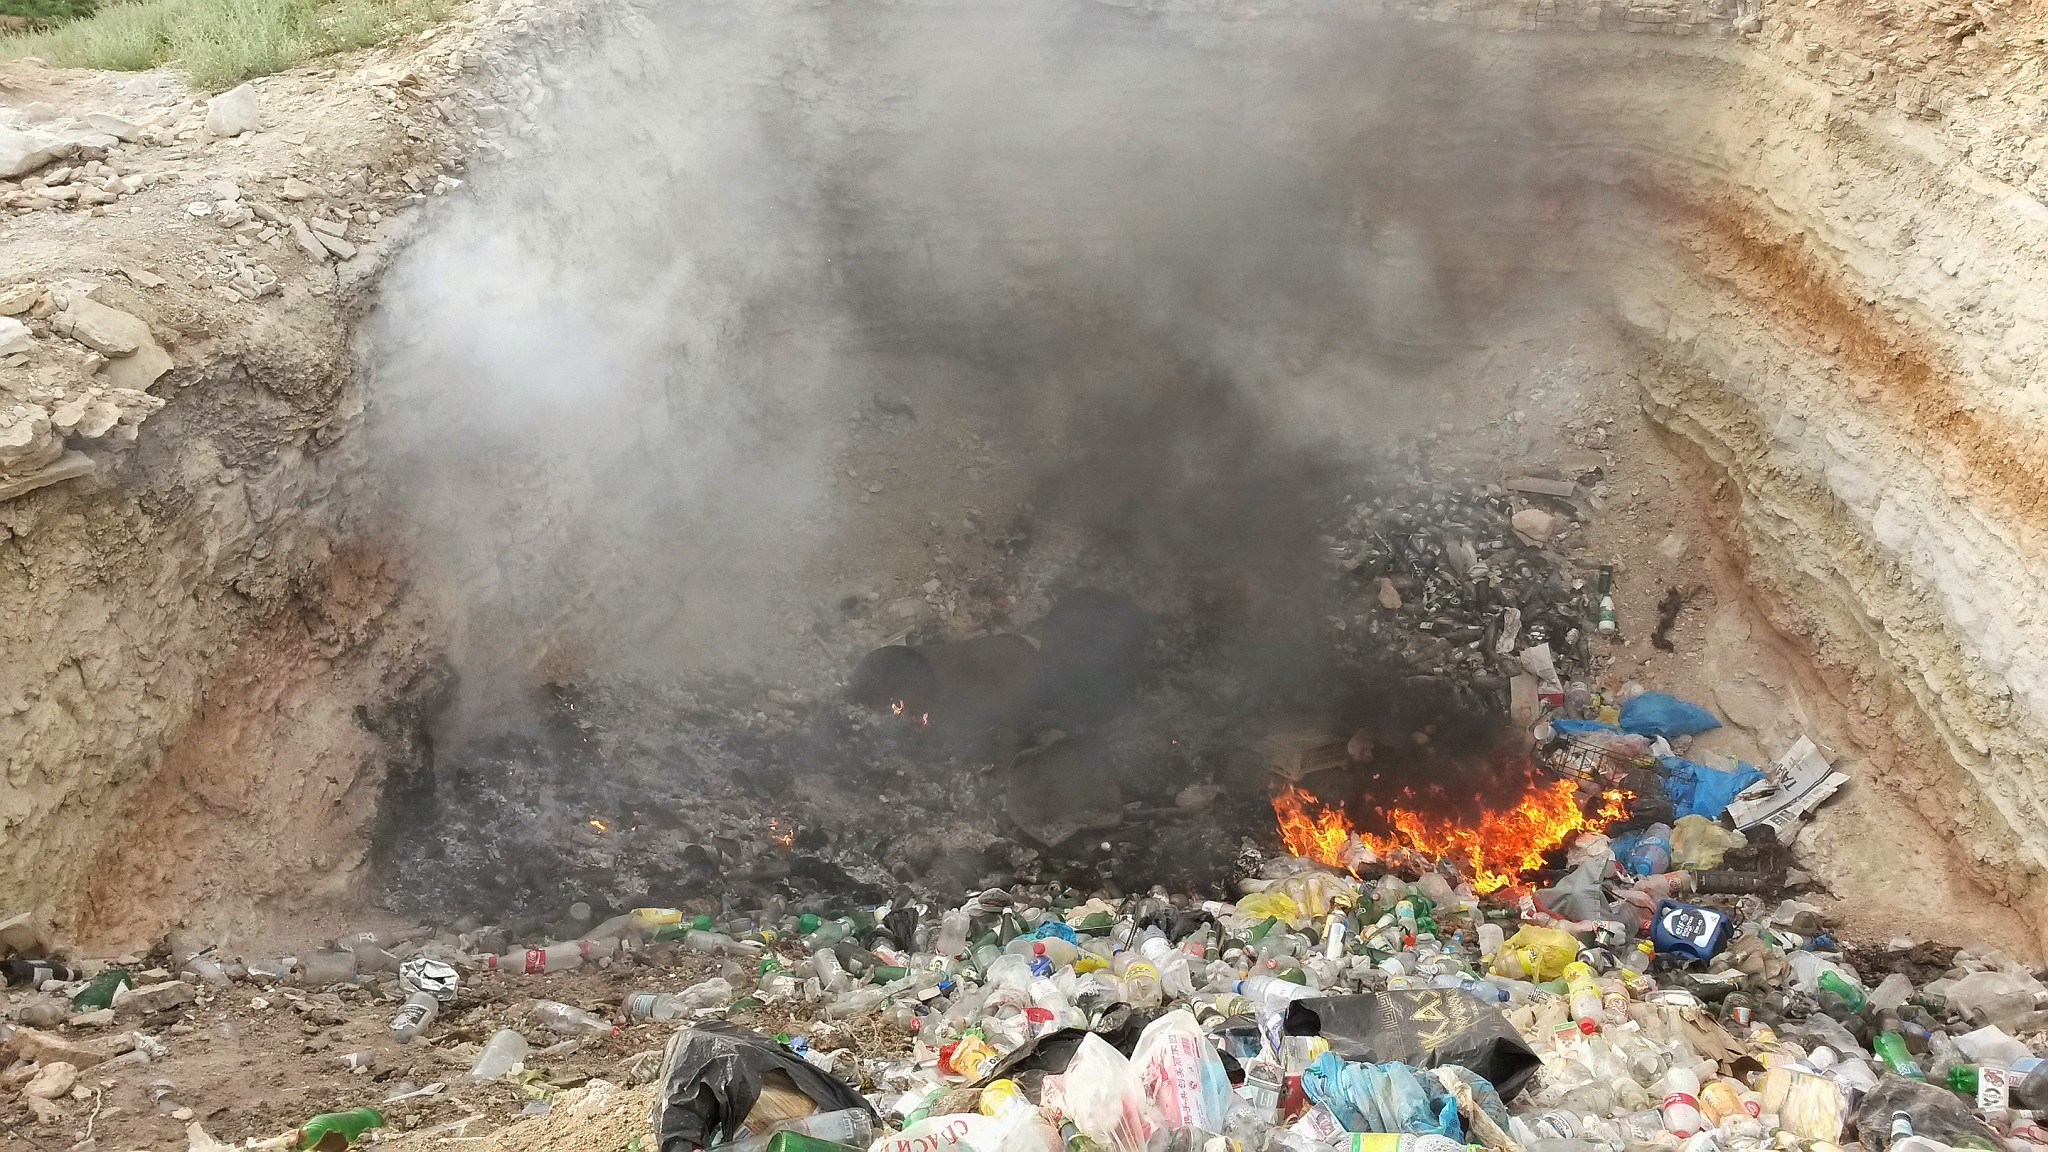 Tímto způsobem se v Kazachstánu zcela standardně "řeší" problém s odpadem. 